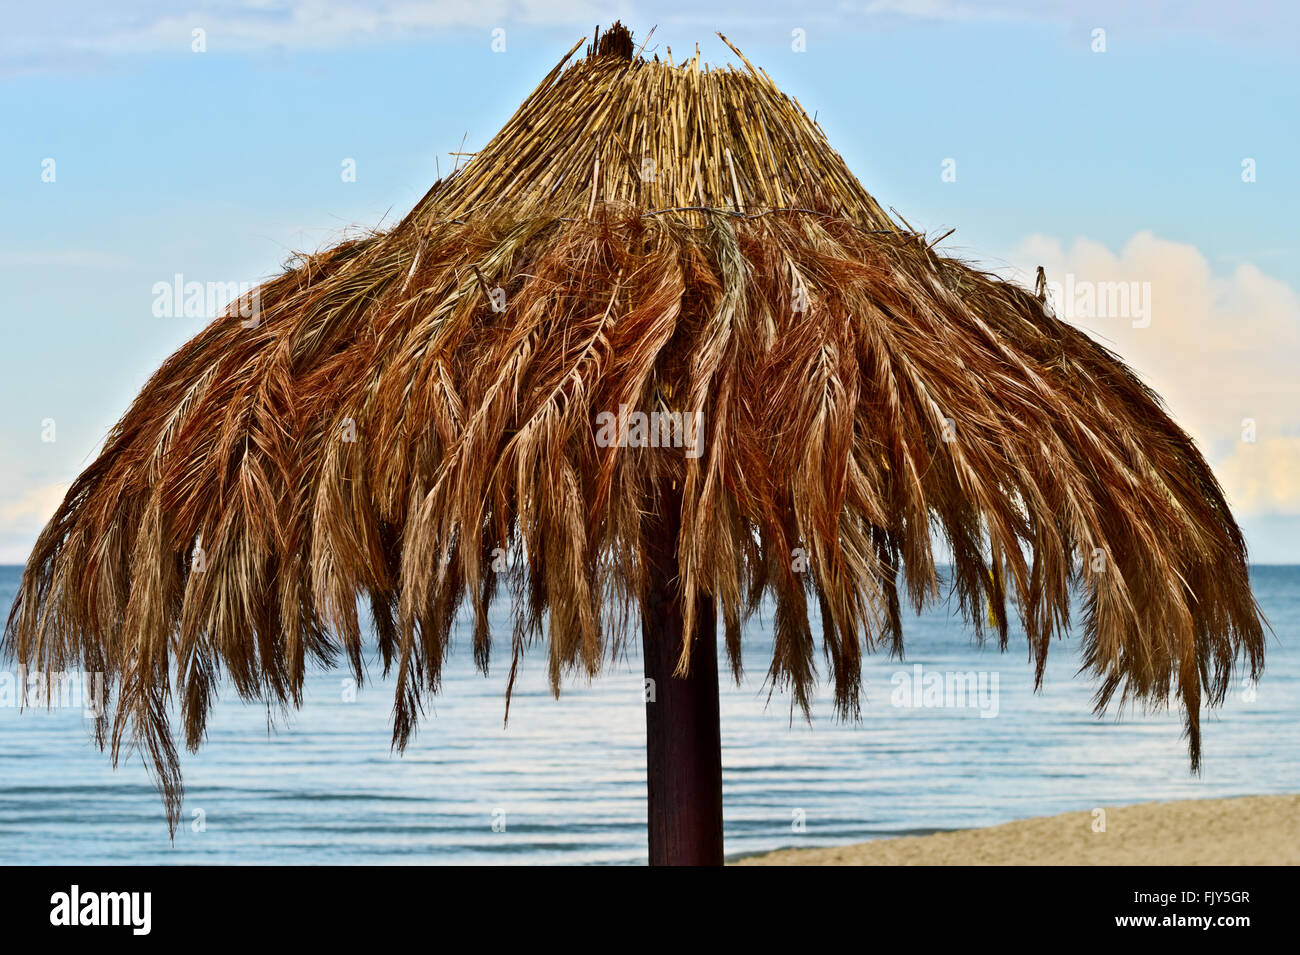 La feuille de palmier parasol sur la plage de la mer Baltique. Stegna,  Poméranie, Pologne Photo Stock - Alamy